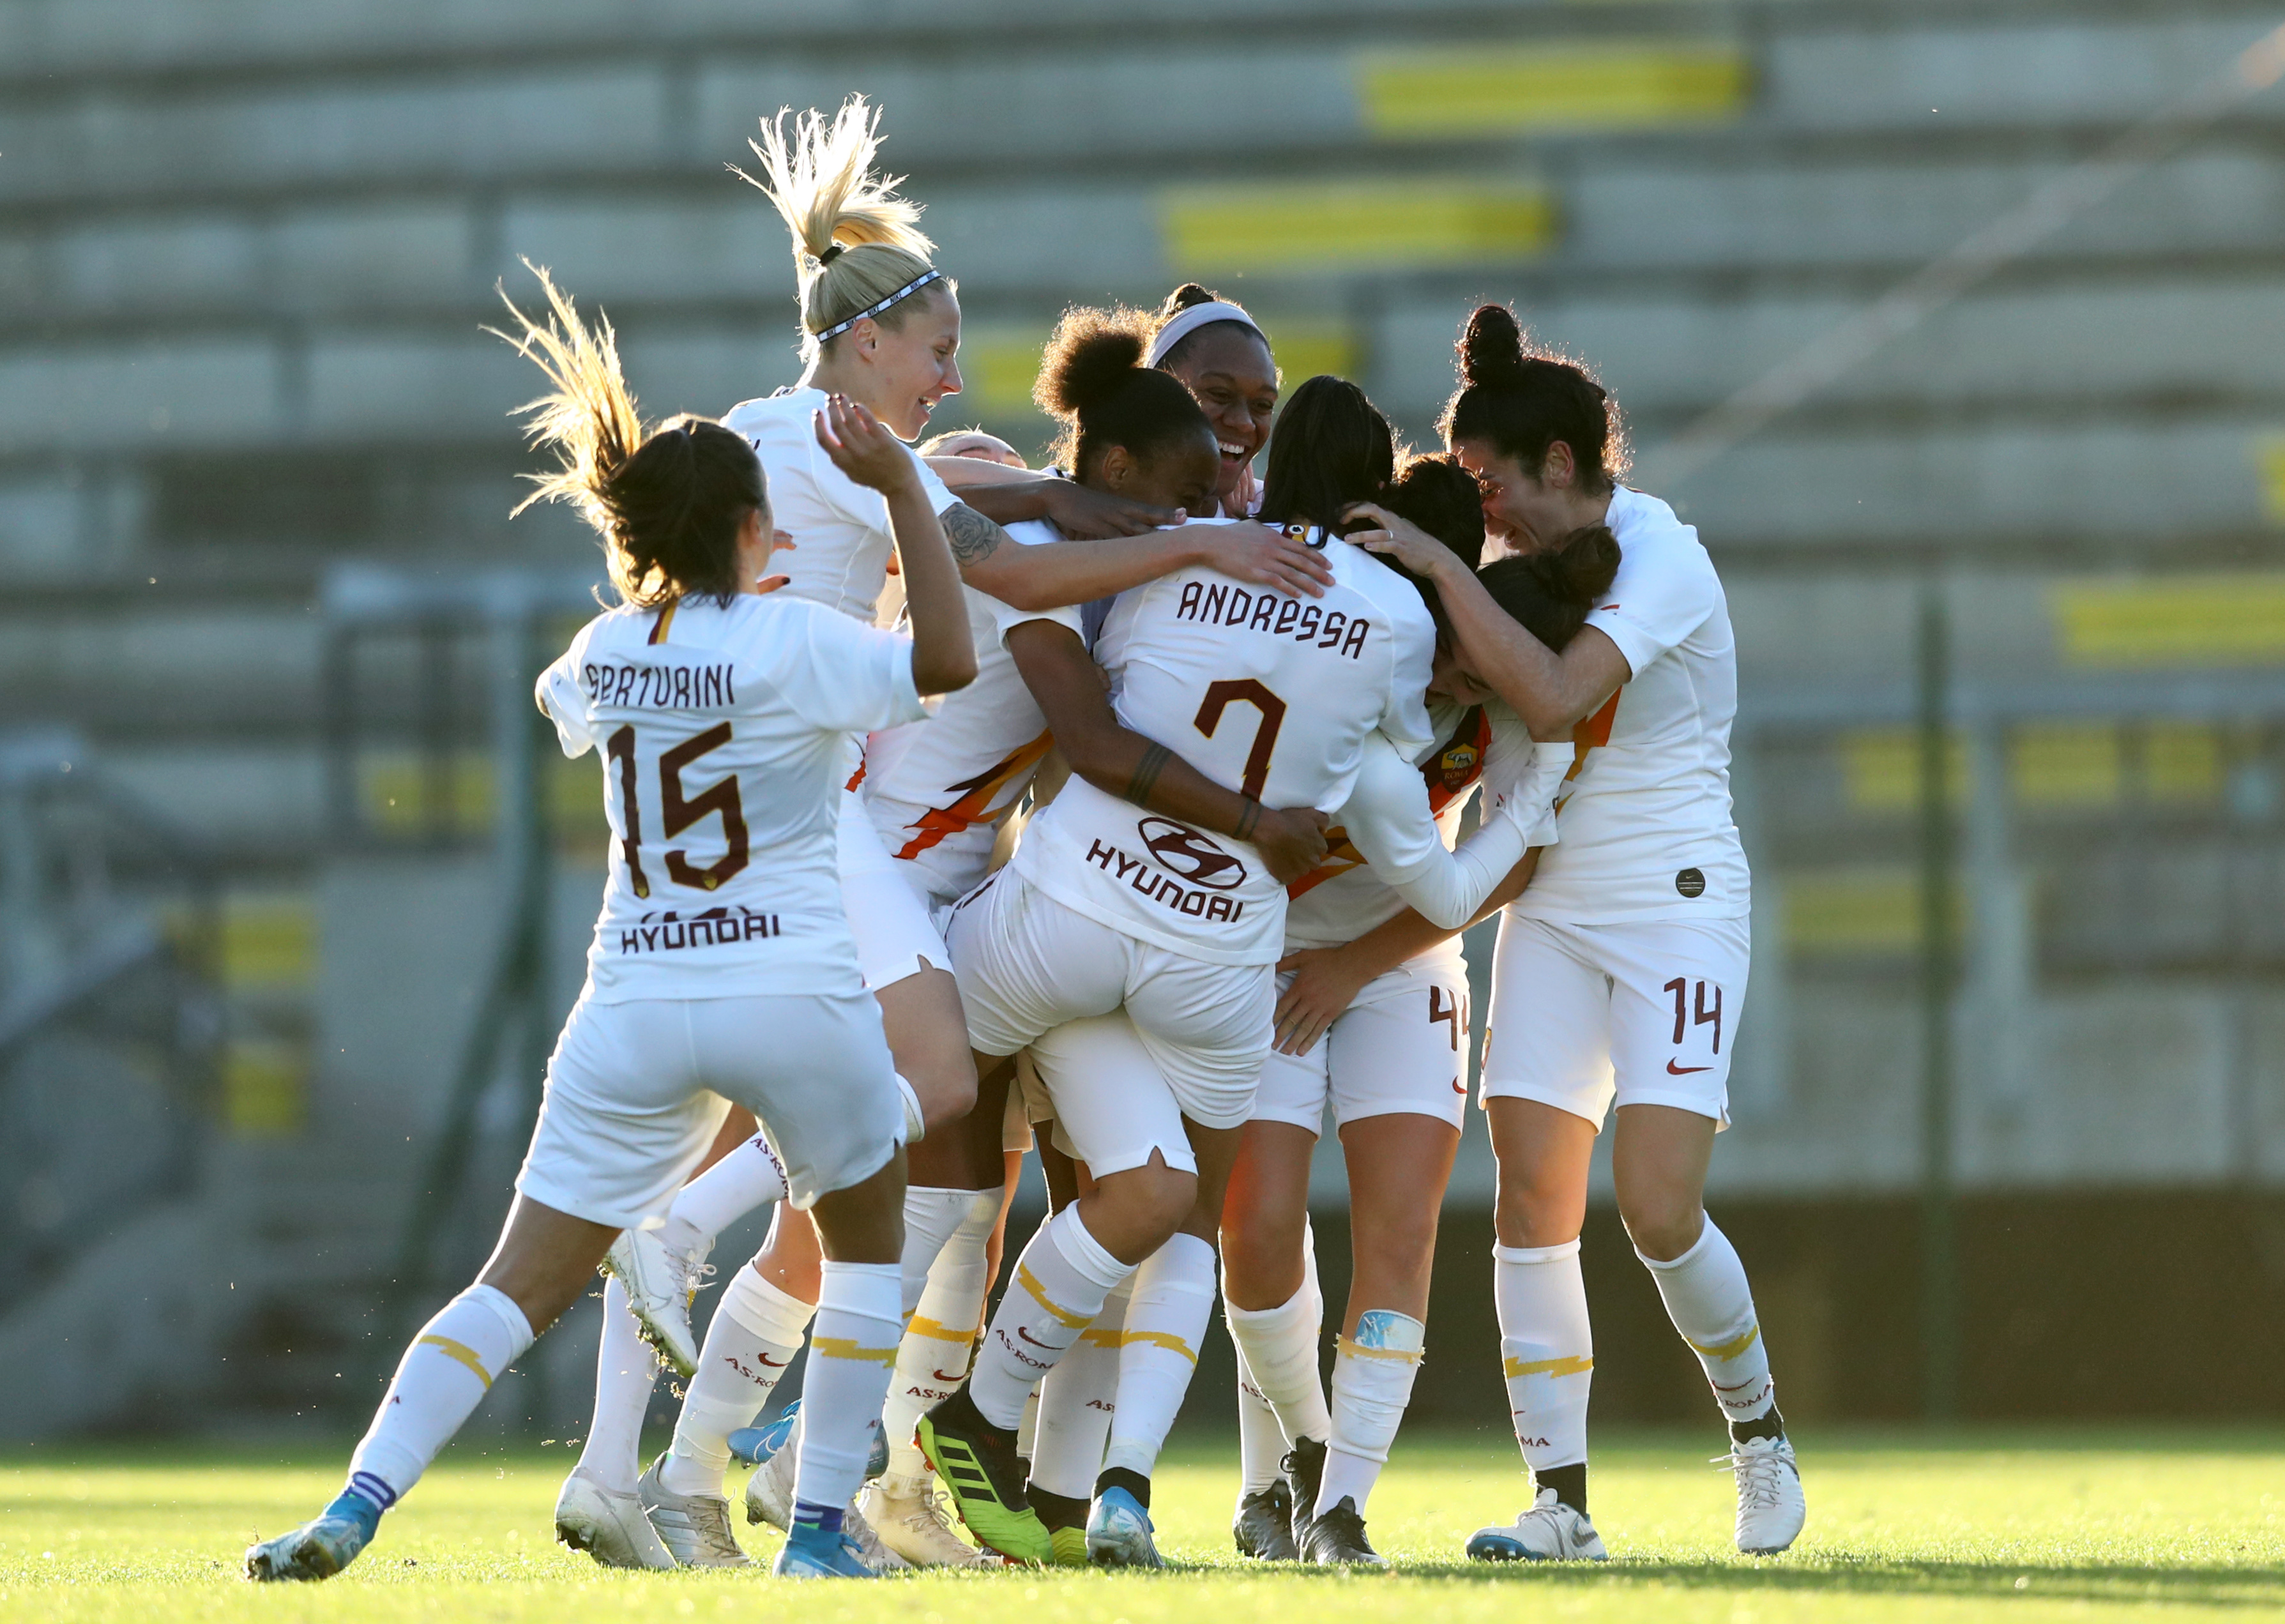 AS Roma v Orobica Calcio Bergamo - Serie A Women’s